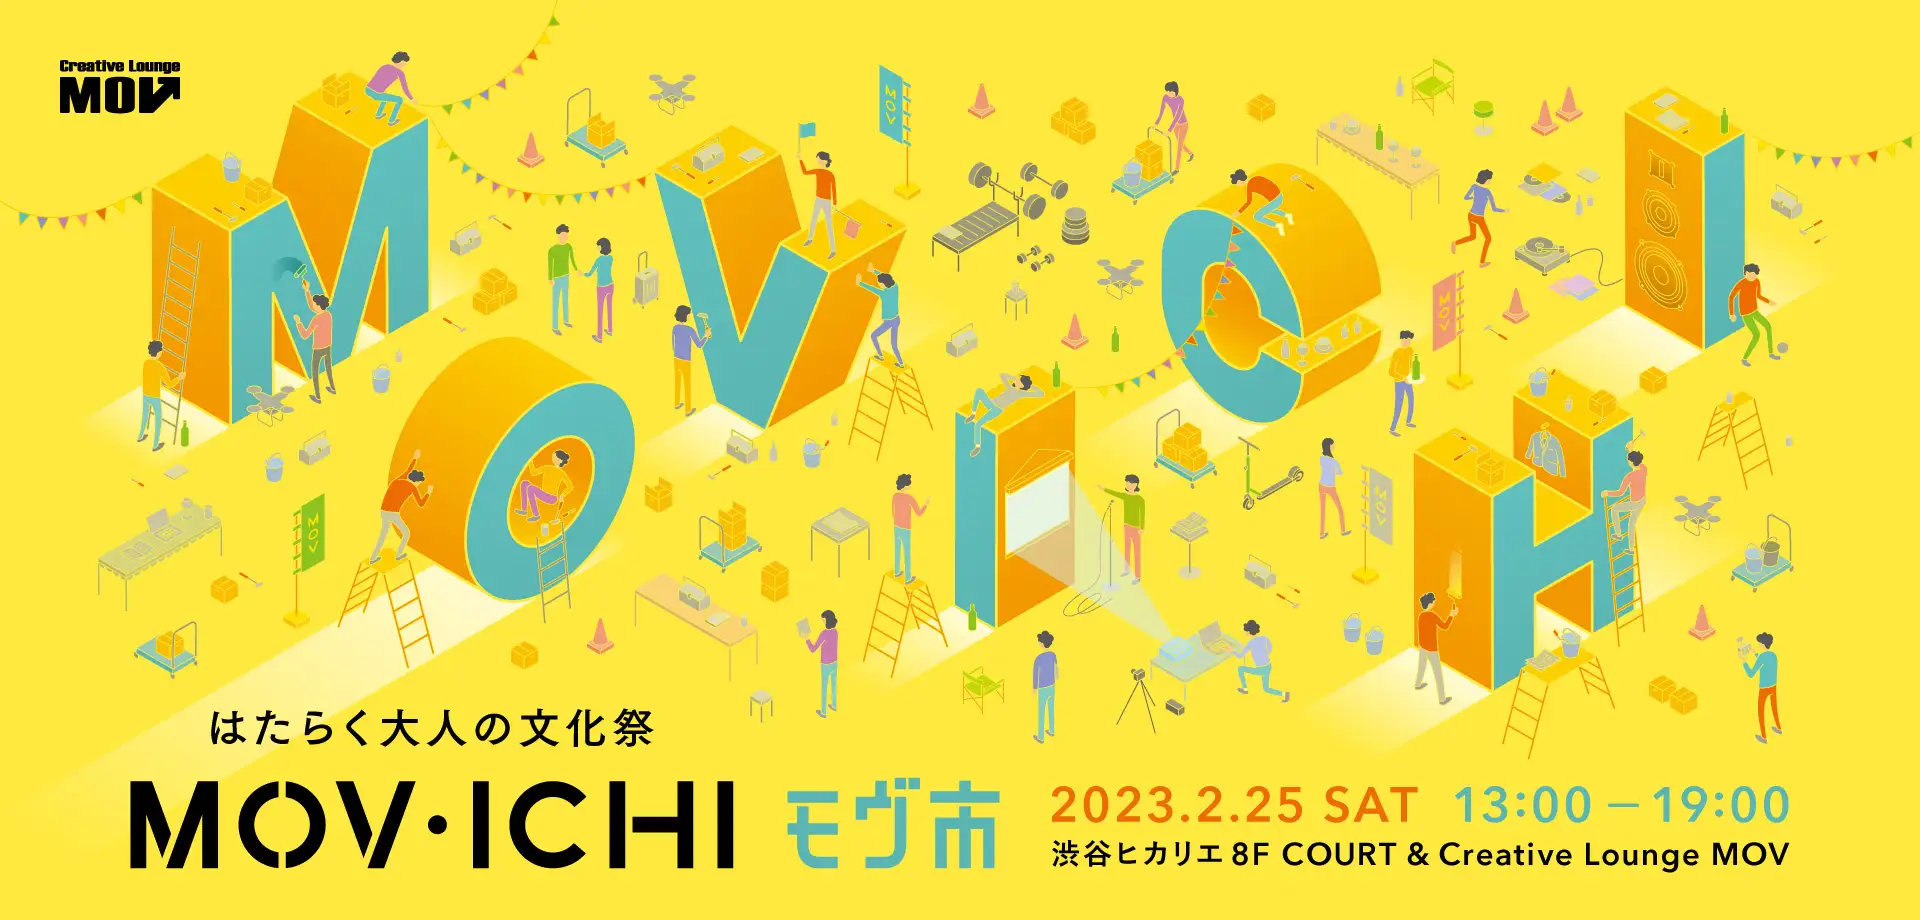 フードも、日用品も、ビジネスも、体験も。“ちょっといい明日”につながる、はたらく大人の文化祭『MOV市』渋谷ヒカリエで2月25日に開催！